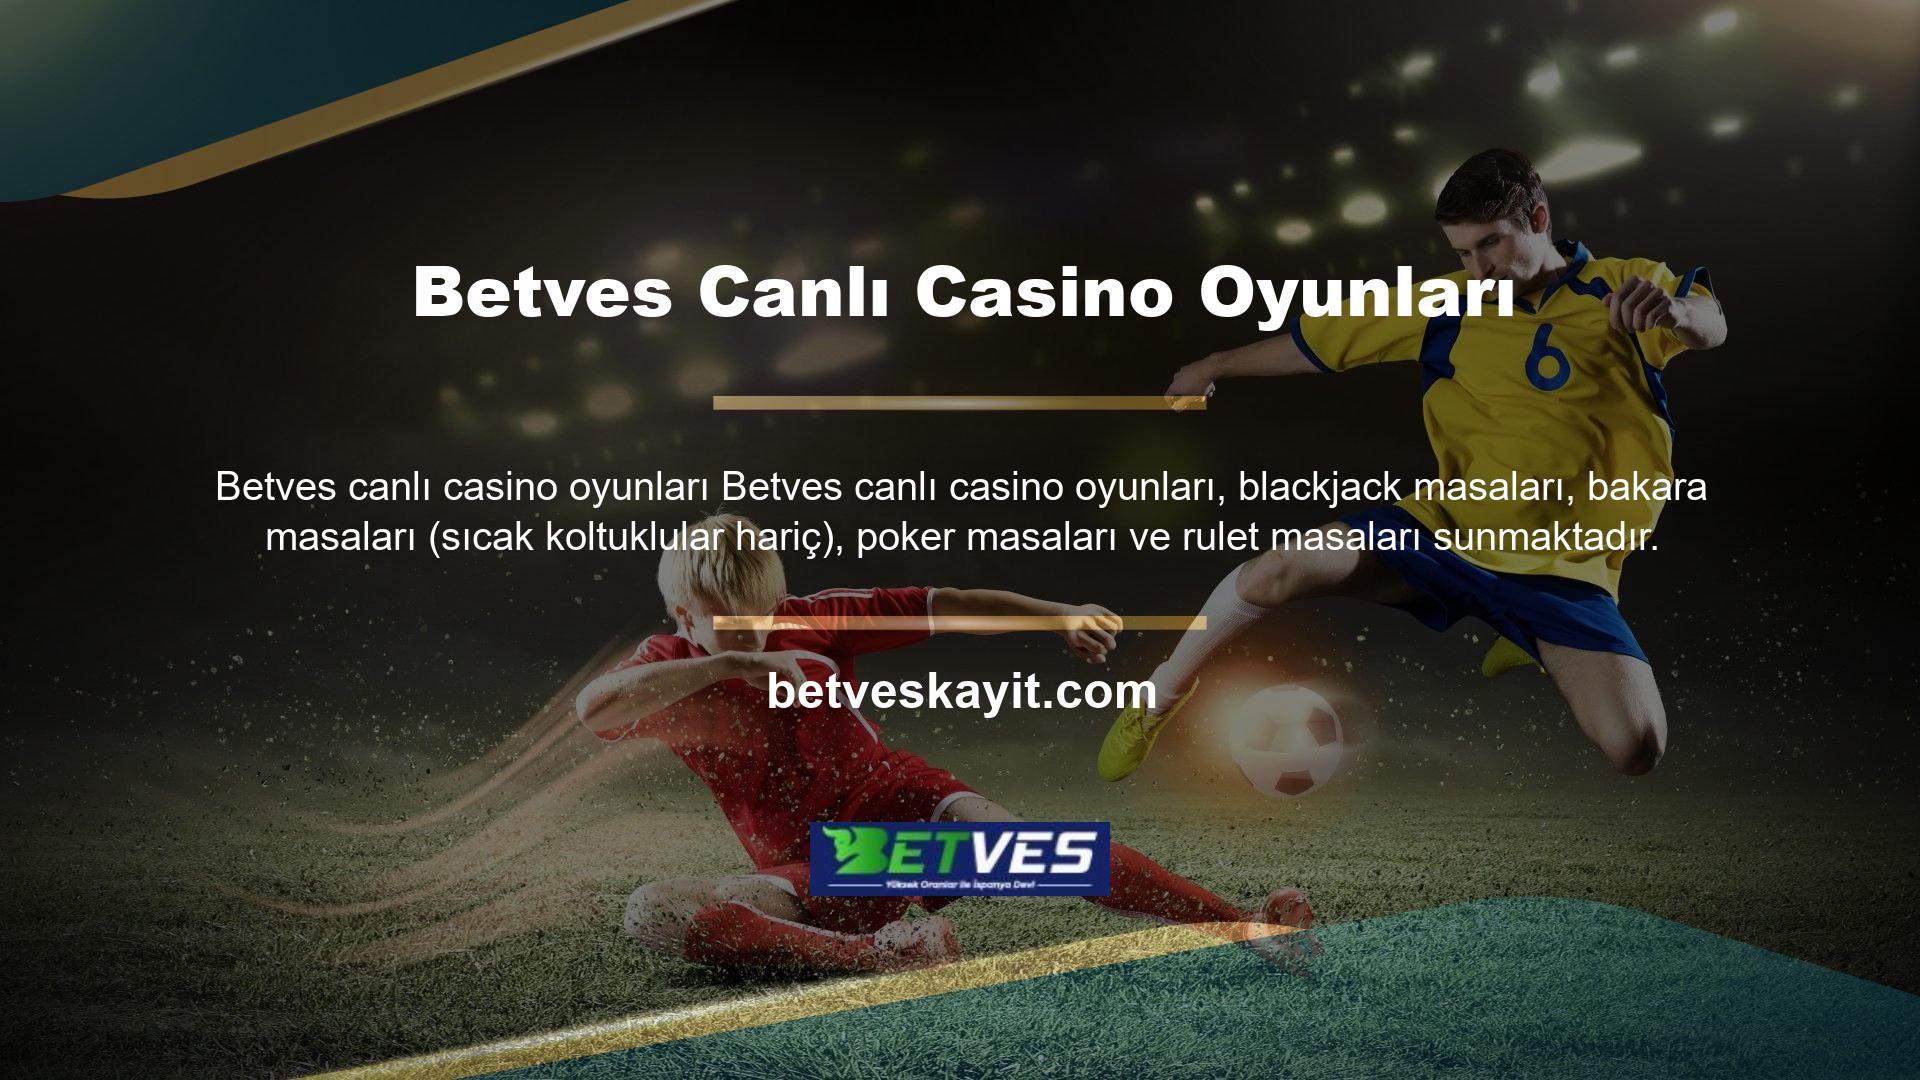 Betves sitesi canlı oyun seçenekleri, bingo ve slot makinelerinin yanı sıra bunları Casino tarzında oynama seçeneği de sunuyor